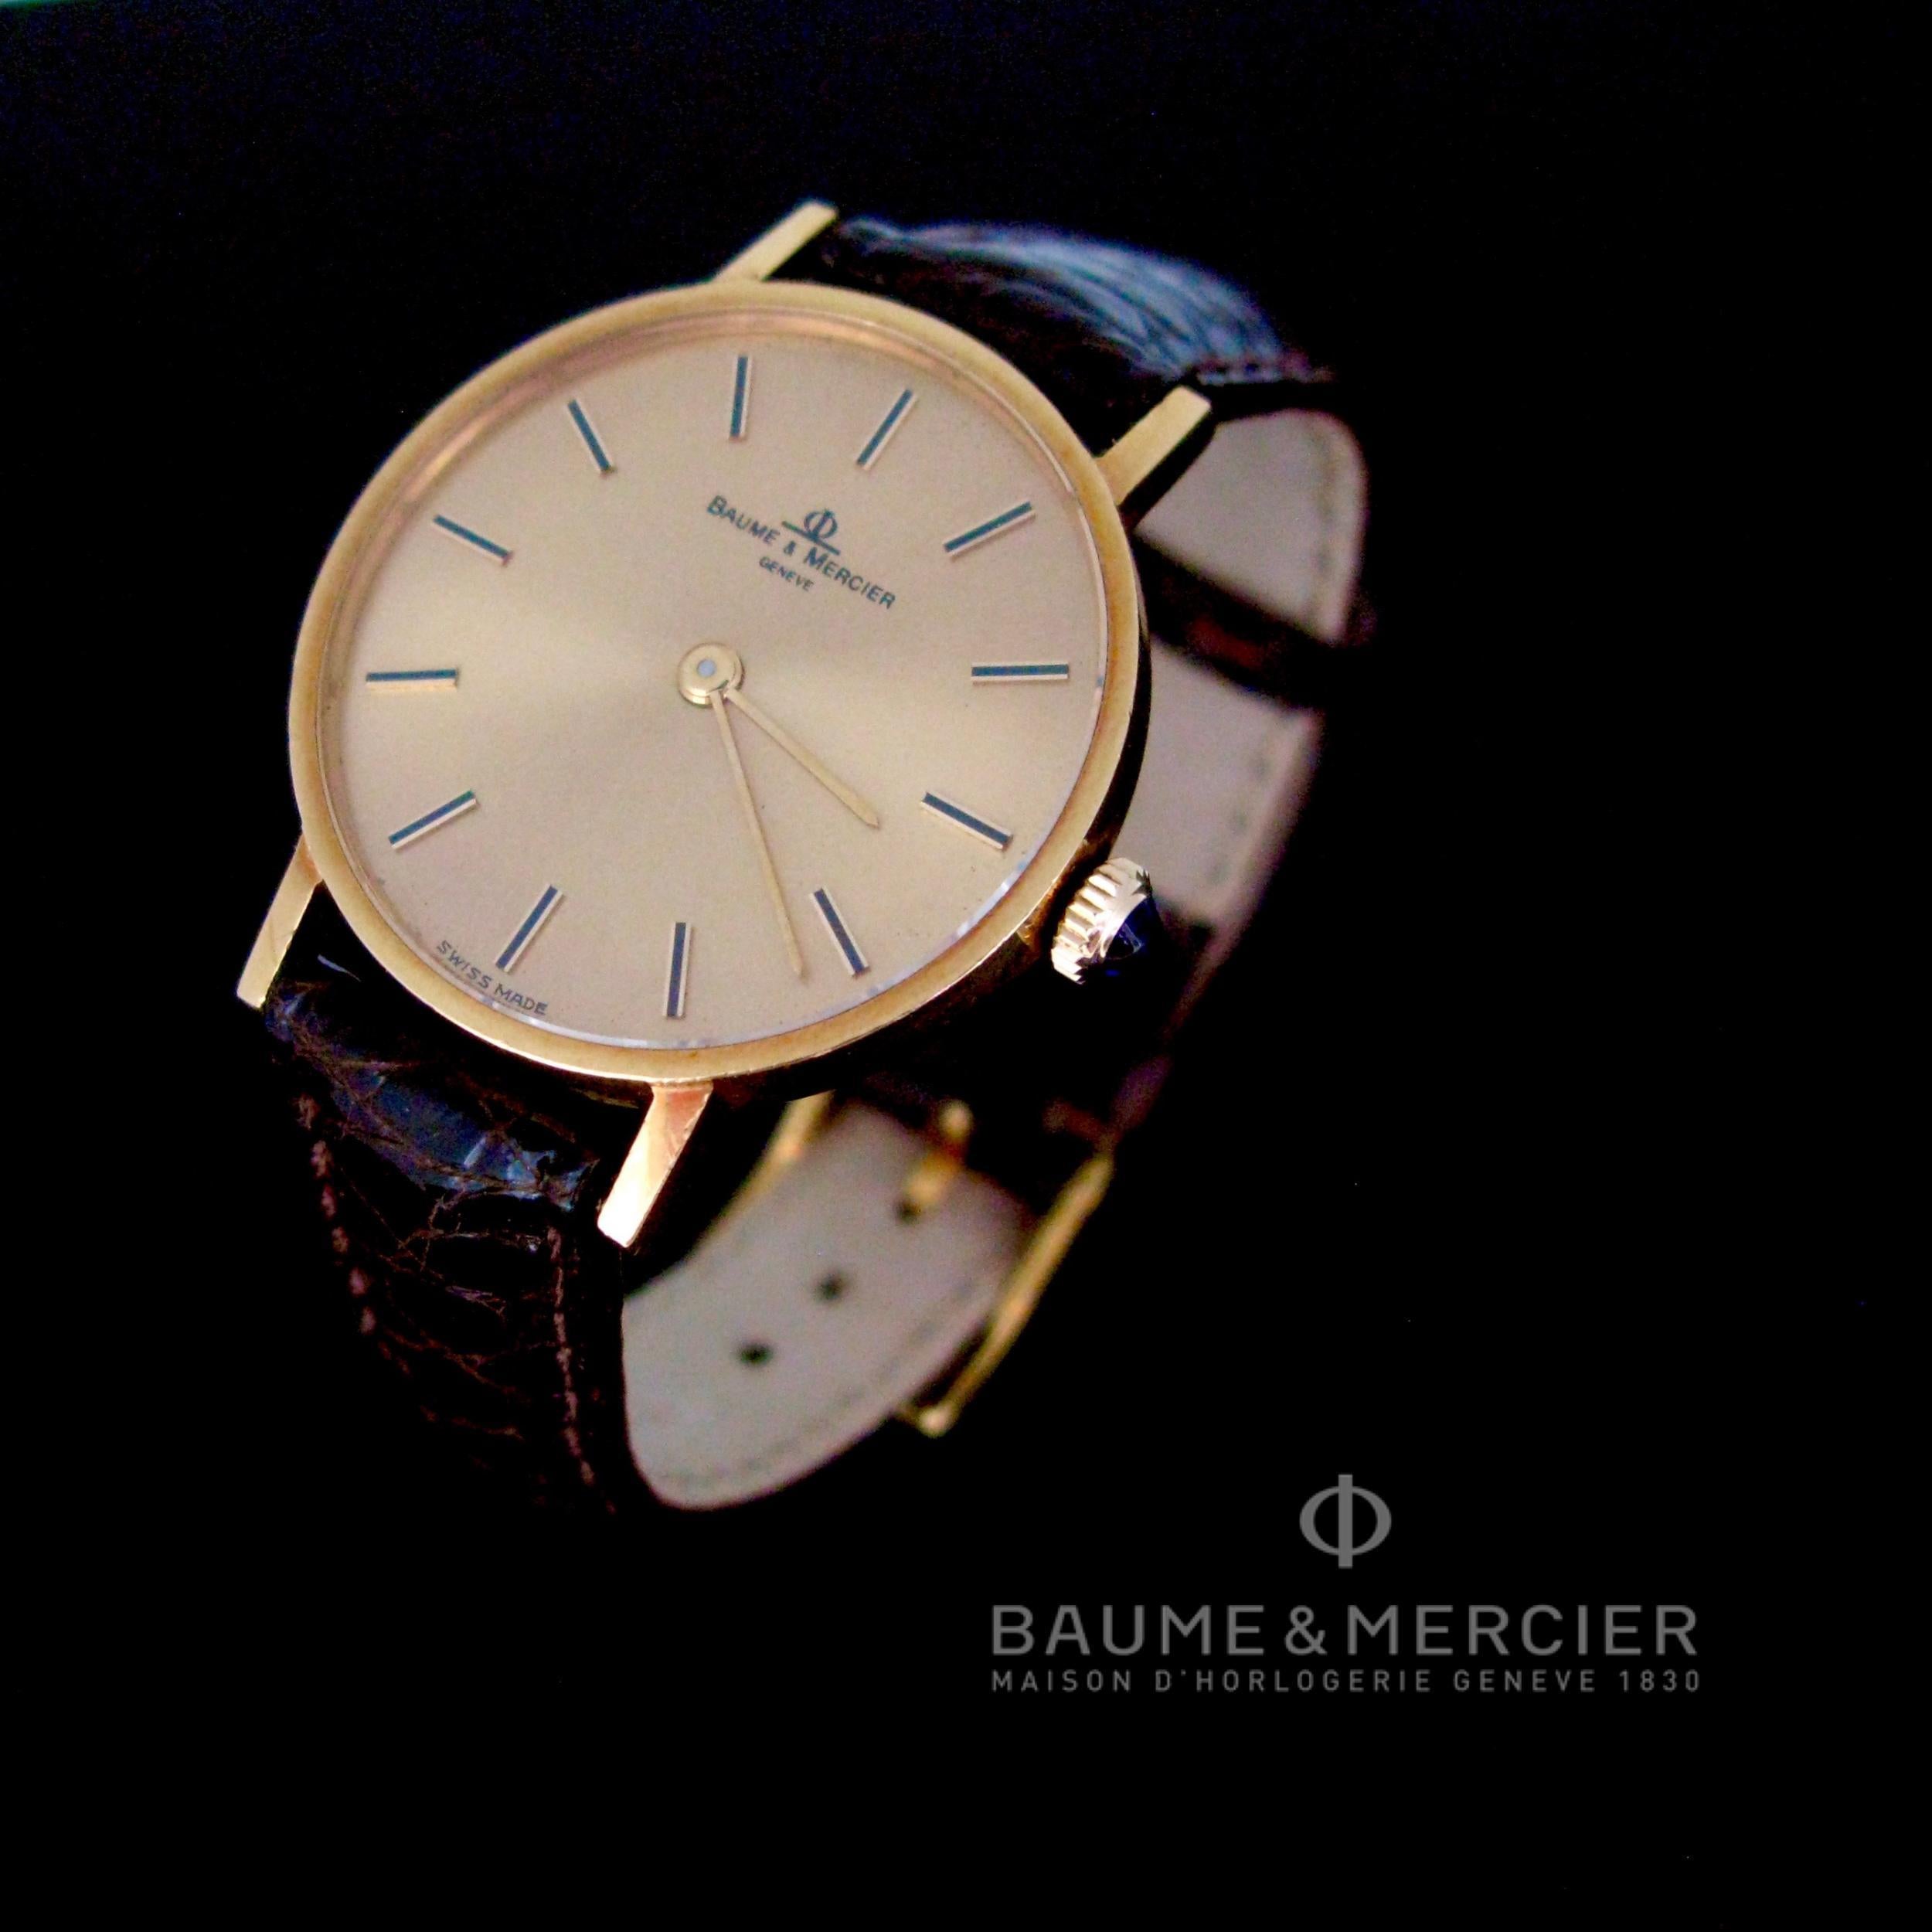 Cette montre Baume & Mercier 35121 est réalisée en or jaune 18 carats. Le mouvement est un calibre 1050 à remontage manuel. Il est en bon état et fonctionne parfaitement. Le bracelet est en cuir véritable. Il est livré avec sa boîte